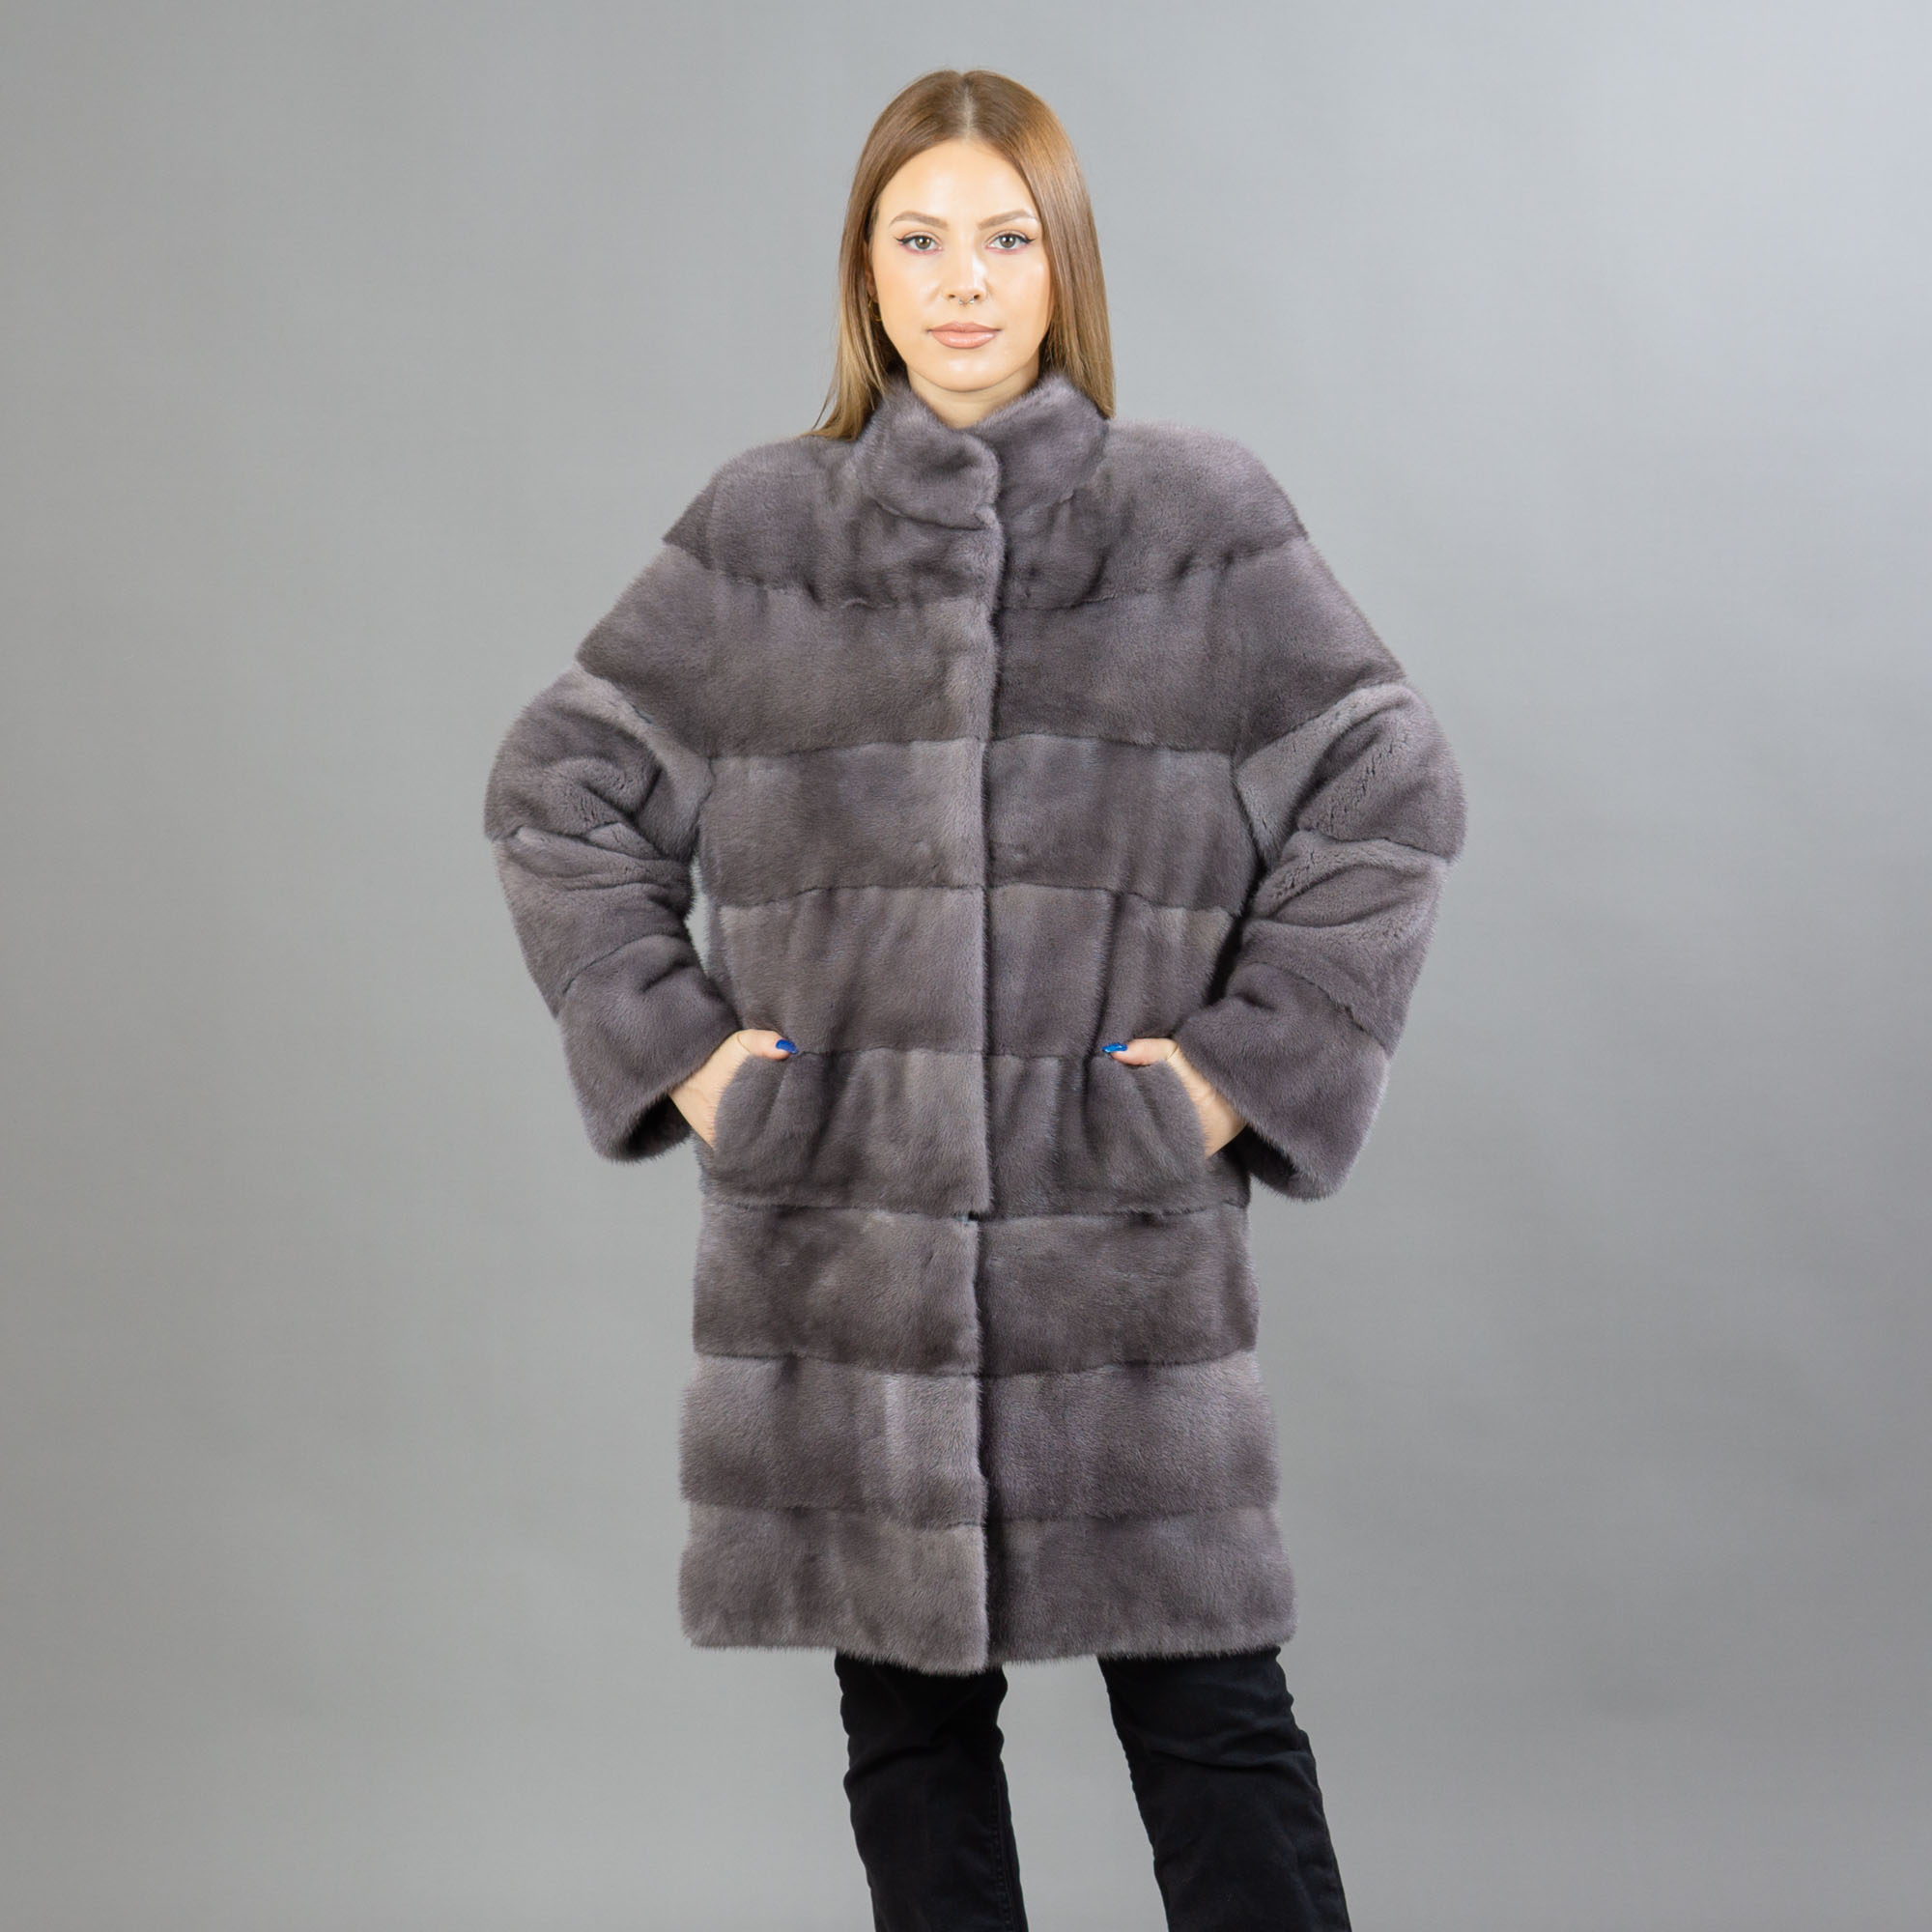 Γκρί γούνινο βιζόν παλτό που μετατρέπεται σε σακάκι